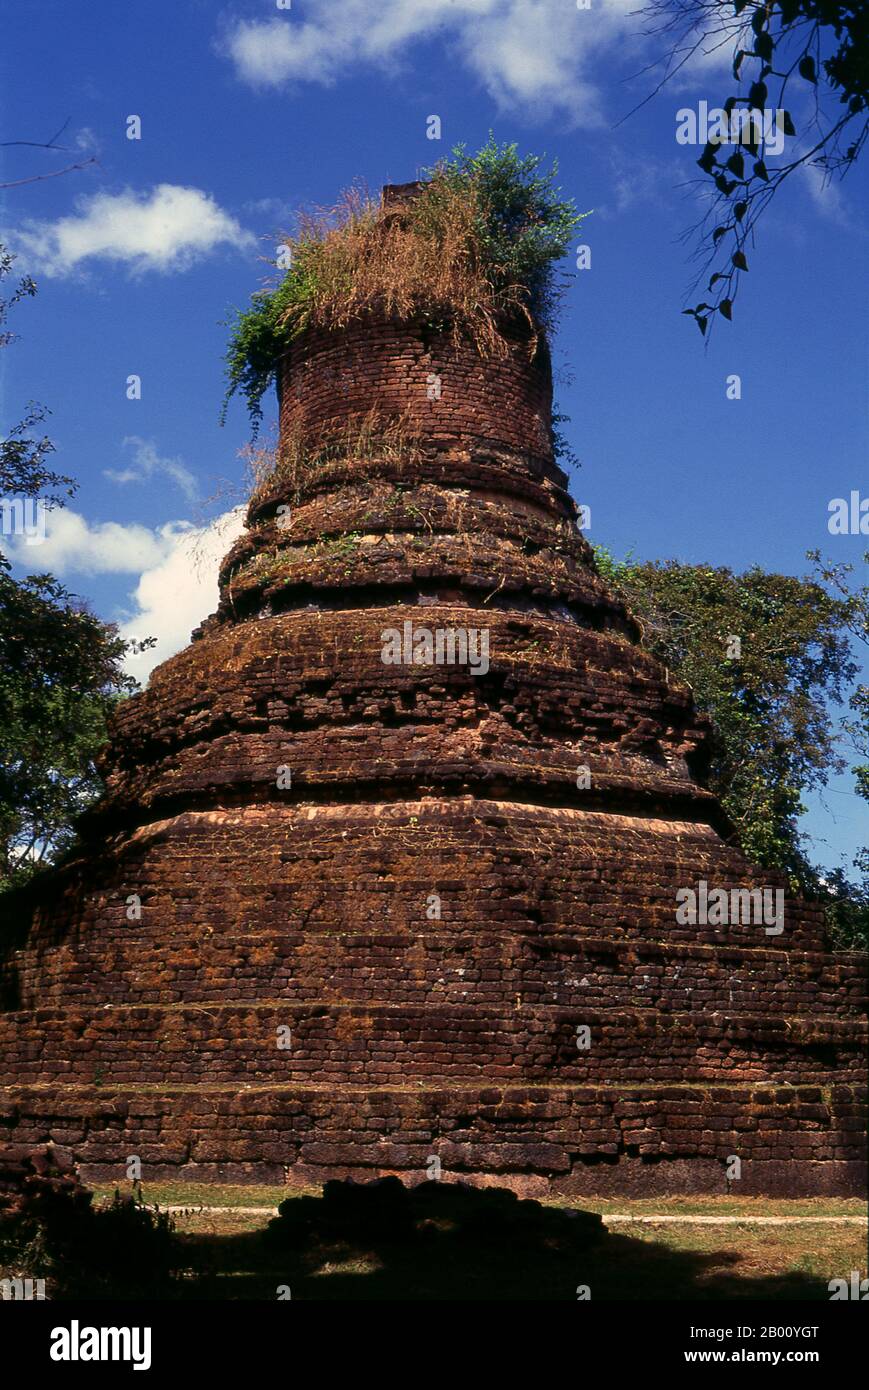 Thailand: Chedi, Wat Phra Non, Kamphaeng Phet Historical Park. Kamphaeng Phet Historical Park in Zentral-Thailand war einst Teil des Sukhothai-Königreichs, das im 13th. Und 14th. Jahrhundert n. Chr. blühte. Das Sukhothai Königreich war das erste der thailändischen Königreiche. Sukhothai, was wörtlich "Dawn of Happiness" bedeutet, war die Hauptstadt des Sukhothai-Königreichs und wurde 1238 gegründet. Es war die Hauptstadt des thailändischen Reiches für etwa 140 Jahre. Stockfoto